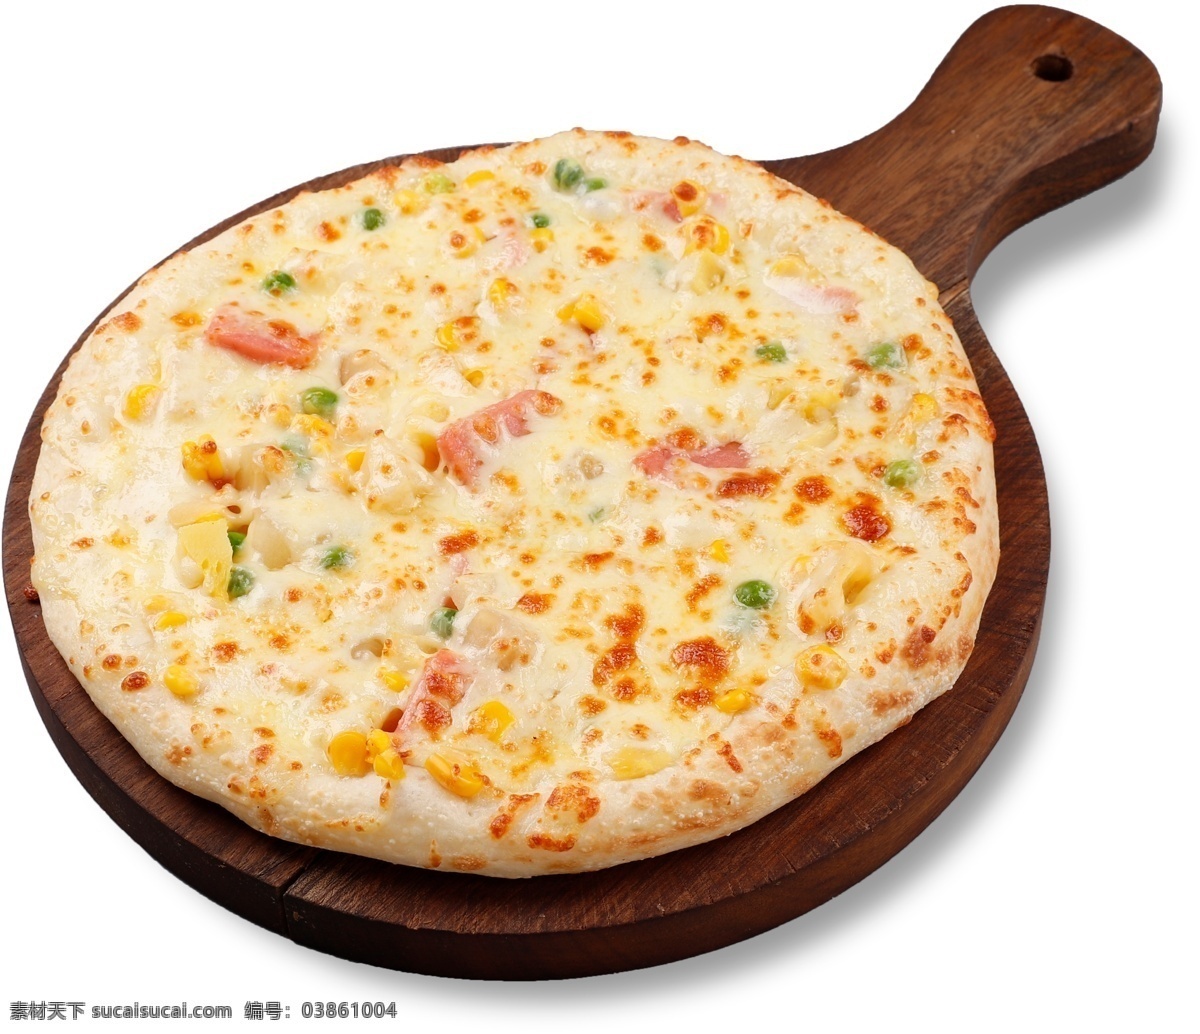 夏威夷 风光 披萨 免扣图 夏威夷披萨 意式披萨 披萨切块 披萨特写 披萨素材 口味披萨 原味披萨 经典披萨 美味披萨 西式美食 披萨木托盘 设计素材 海报素材 餐饮素材 分层